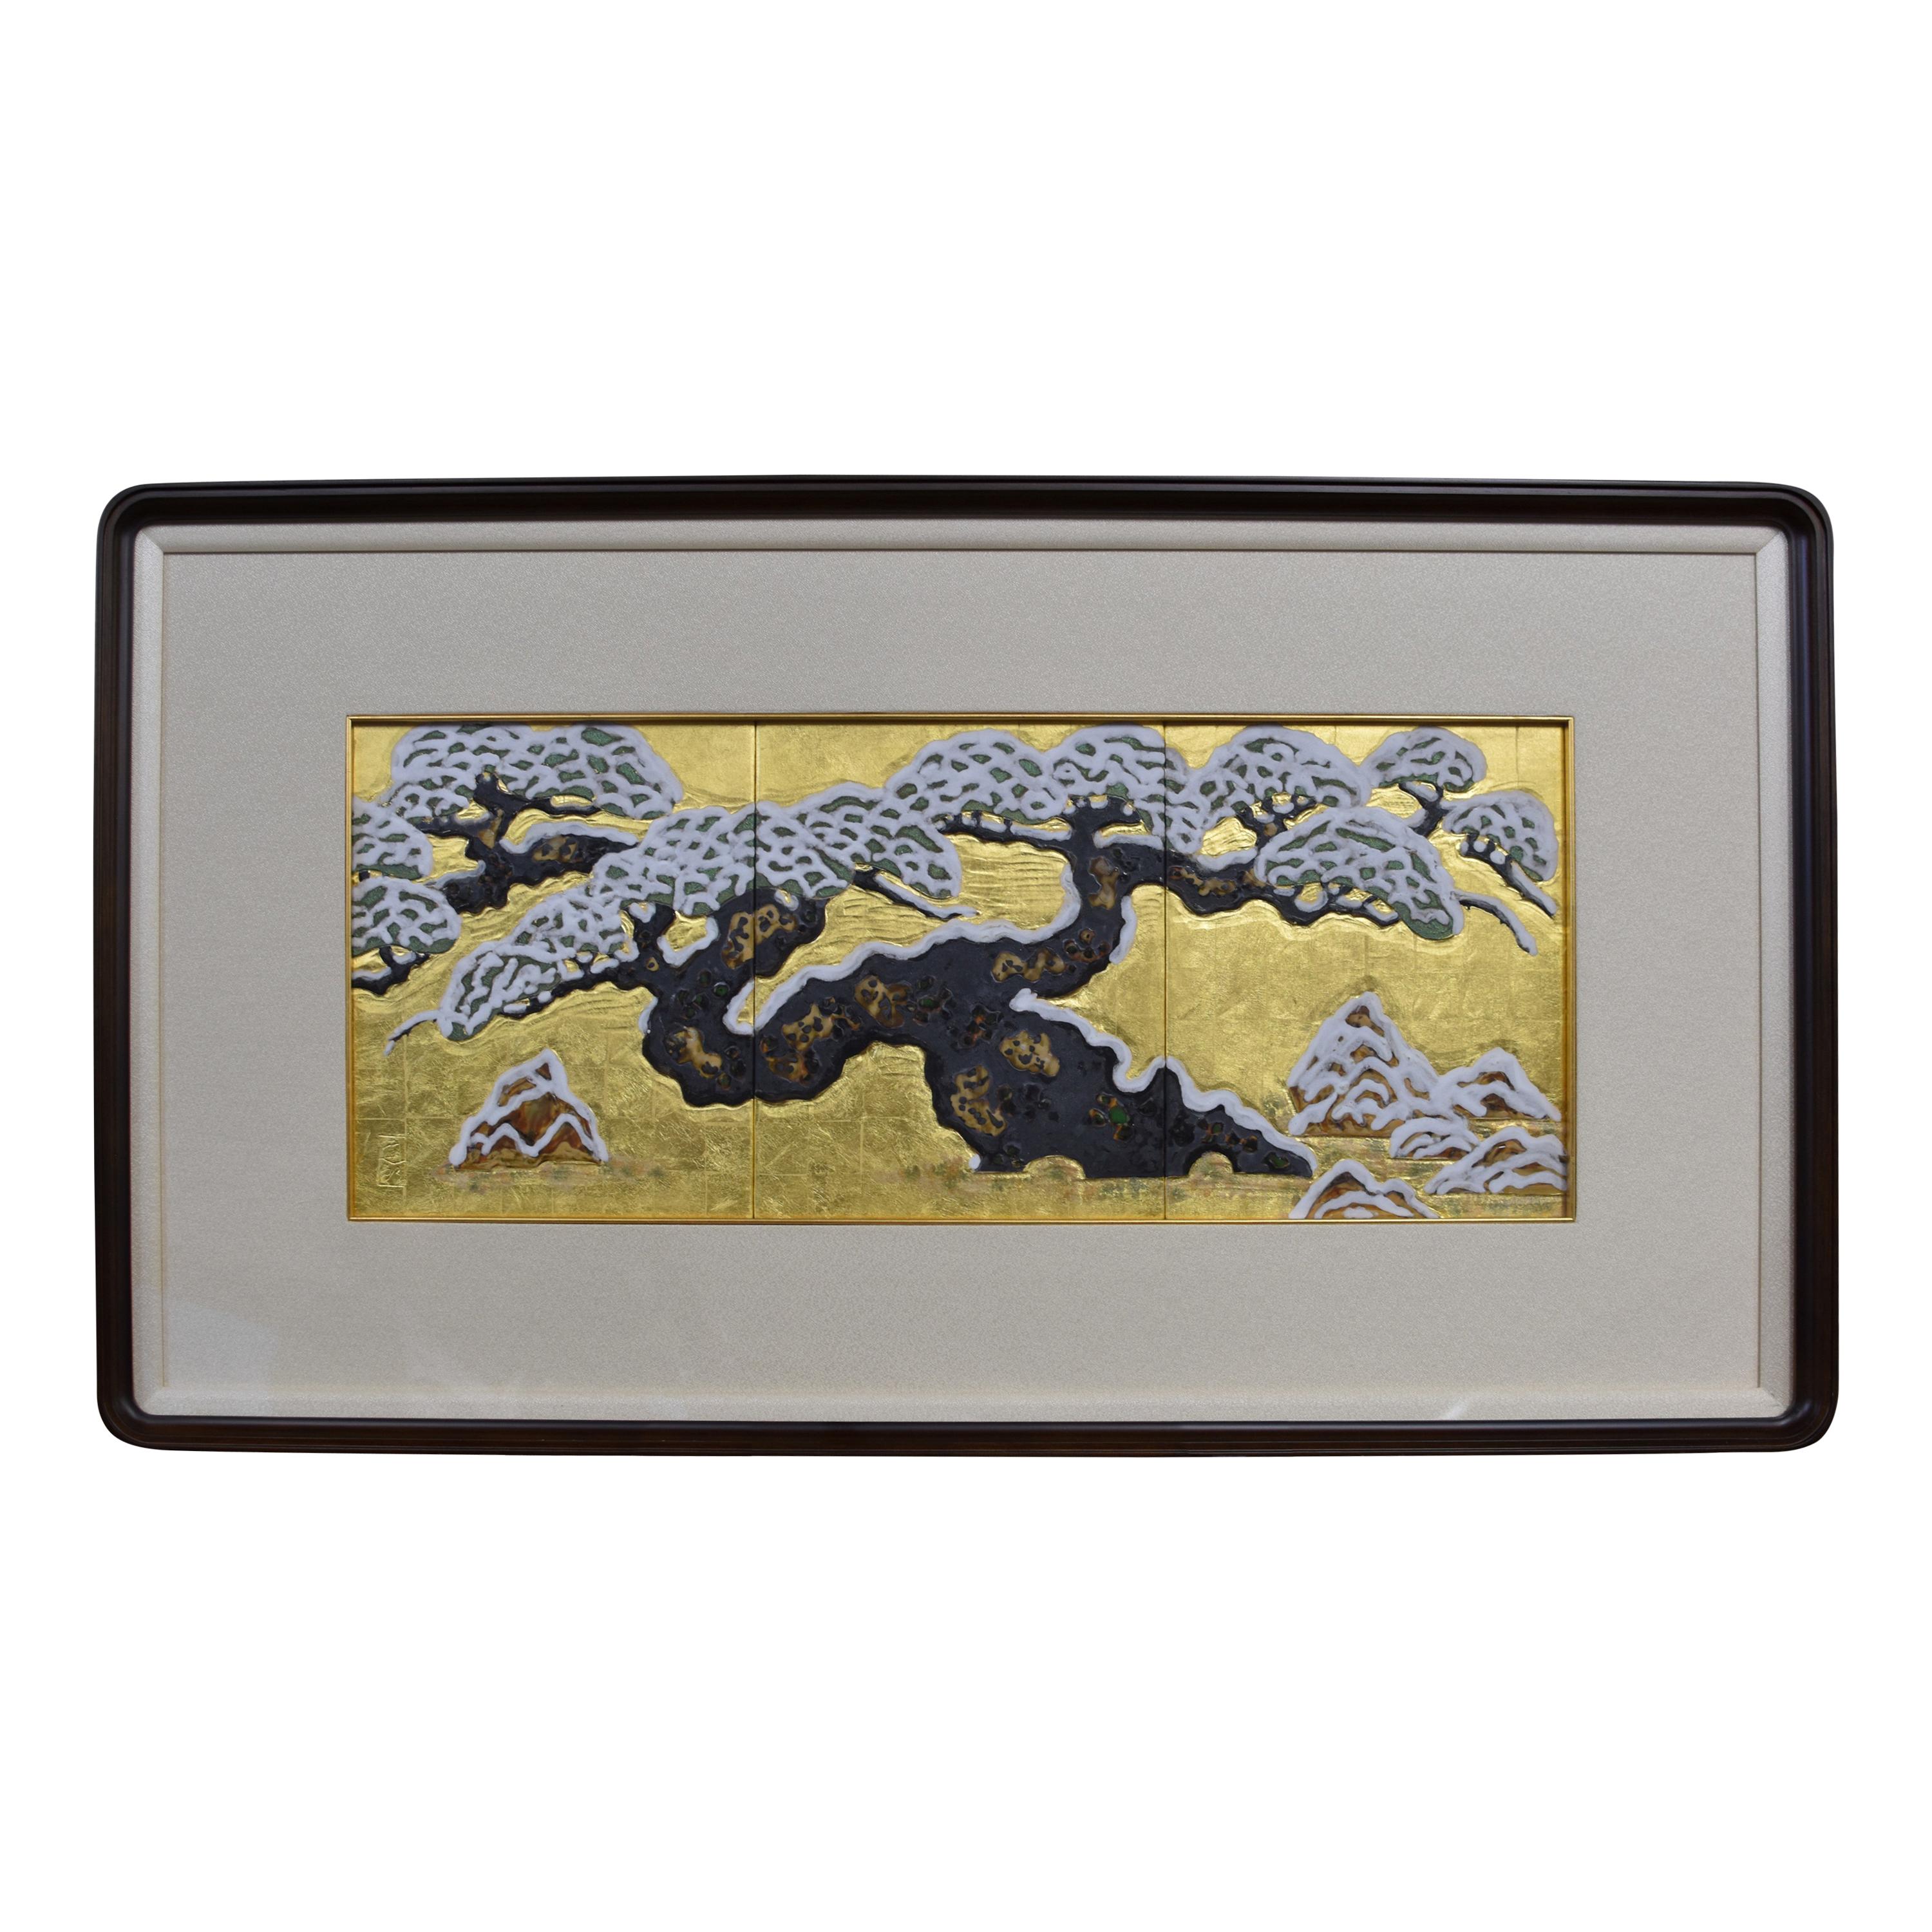 Japanese Gold Leaf Hand Painted Framed Porcelain Panel by Master Artist